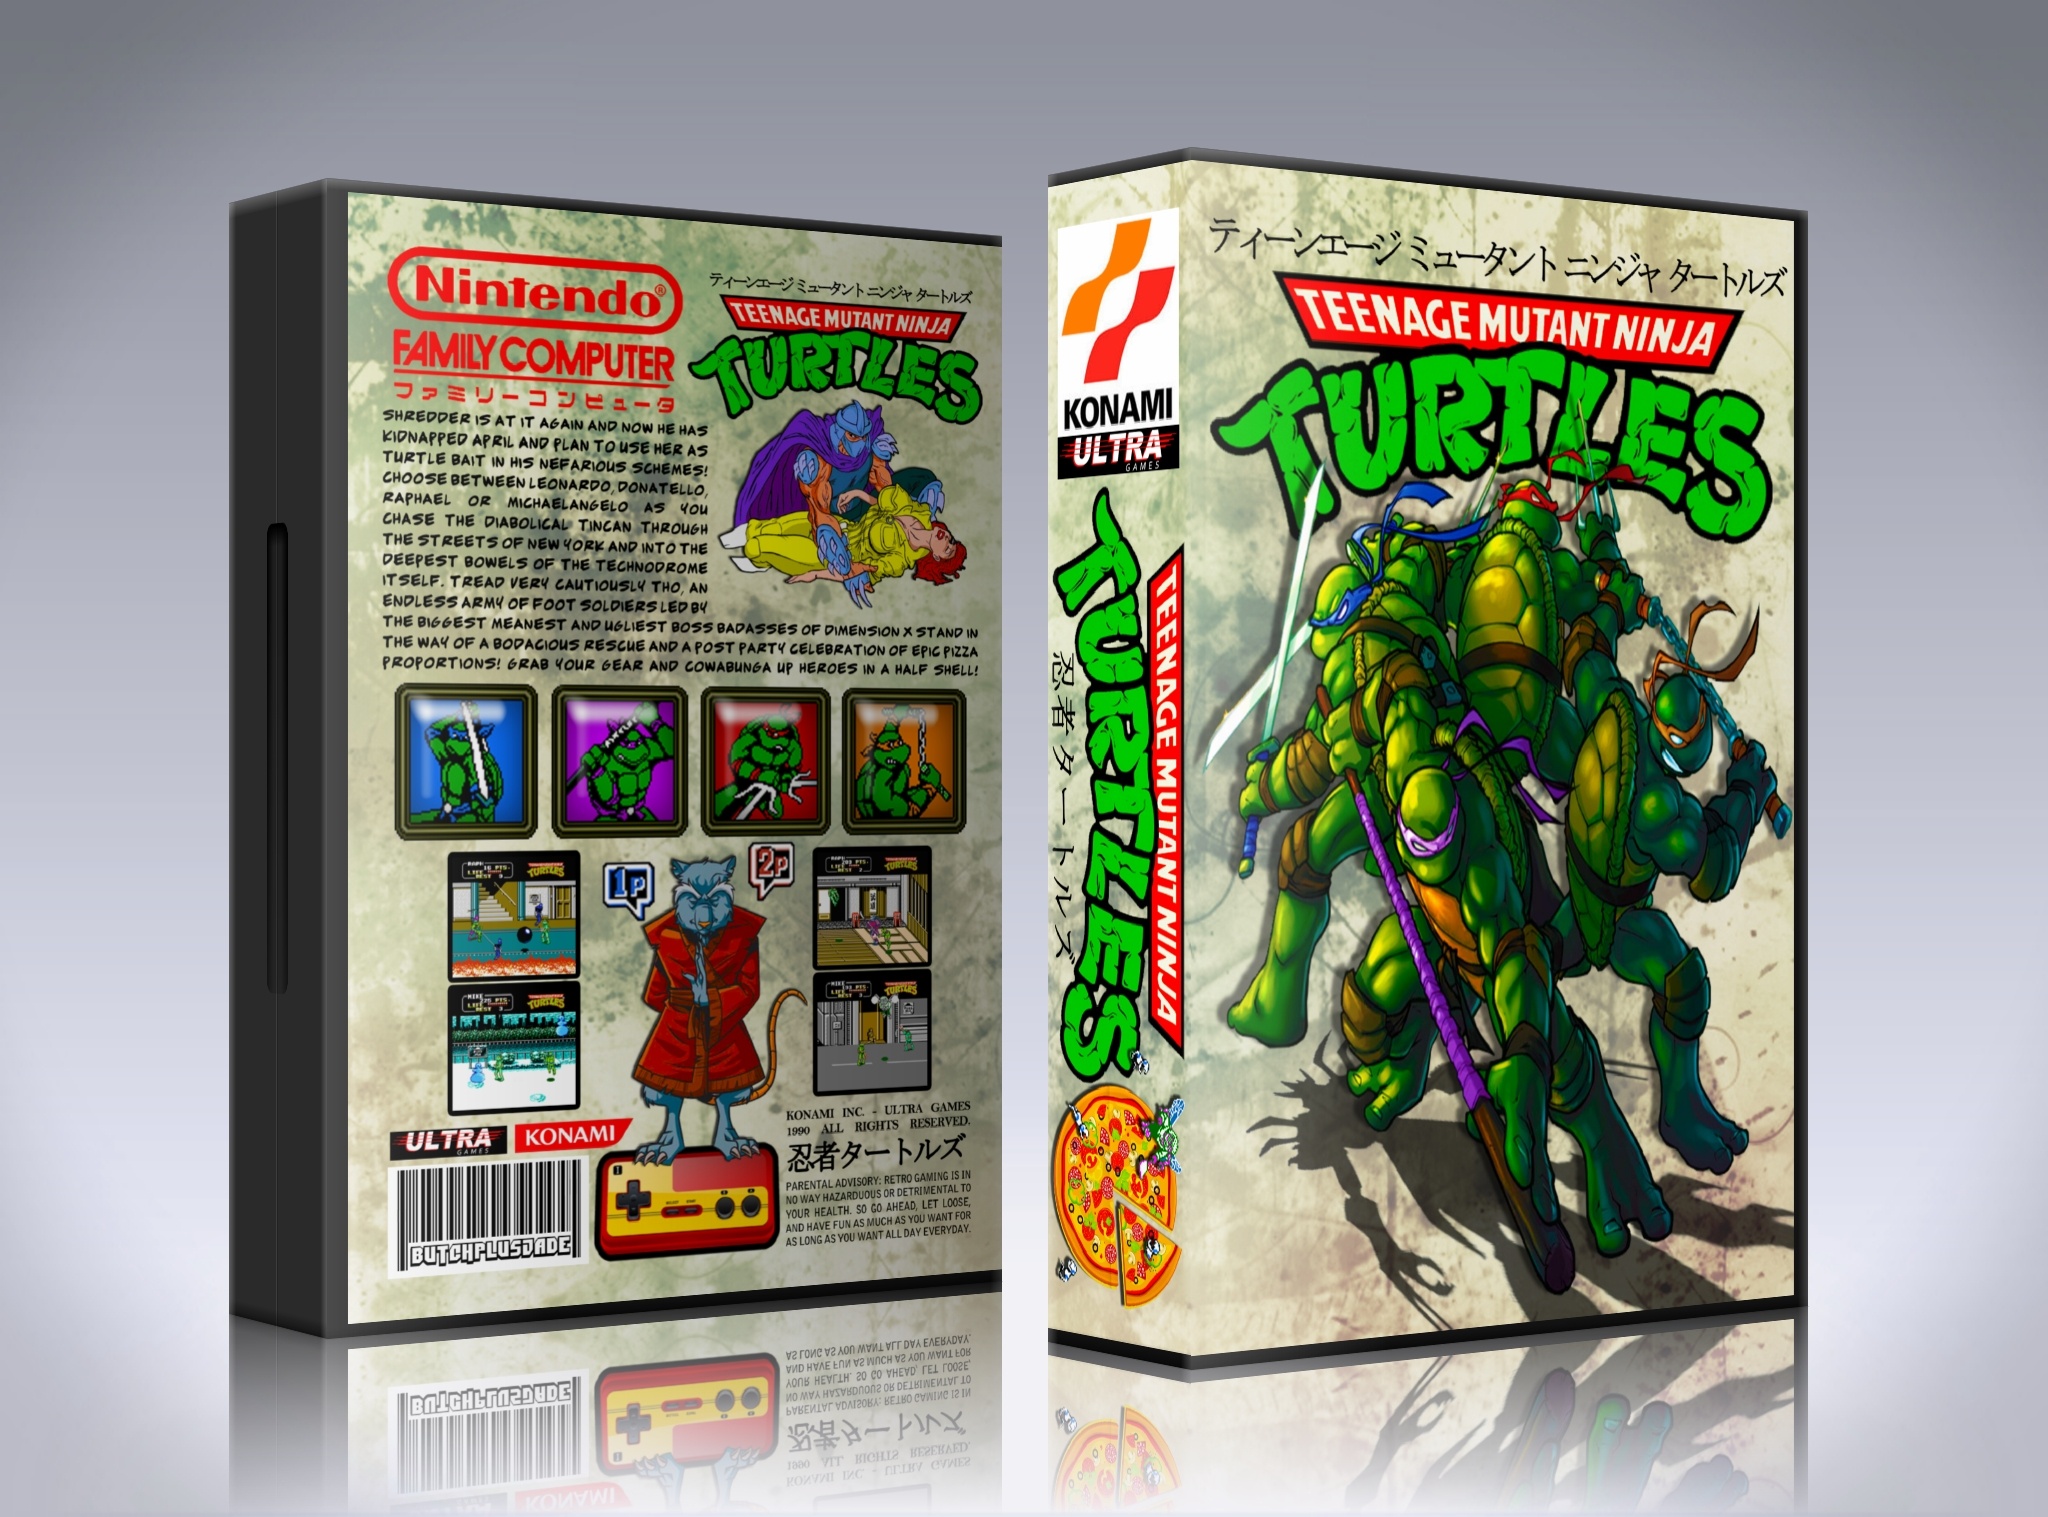 Teenage Mutant Ninja Turtles box cover